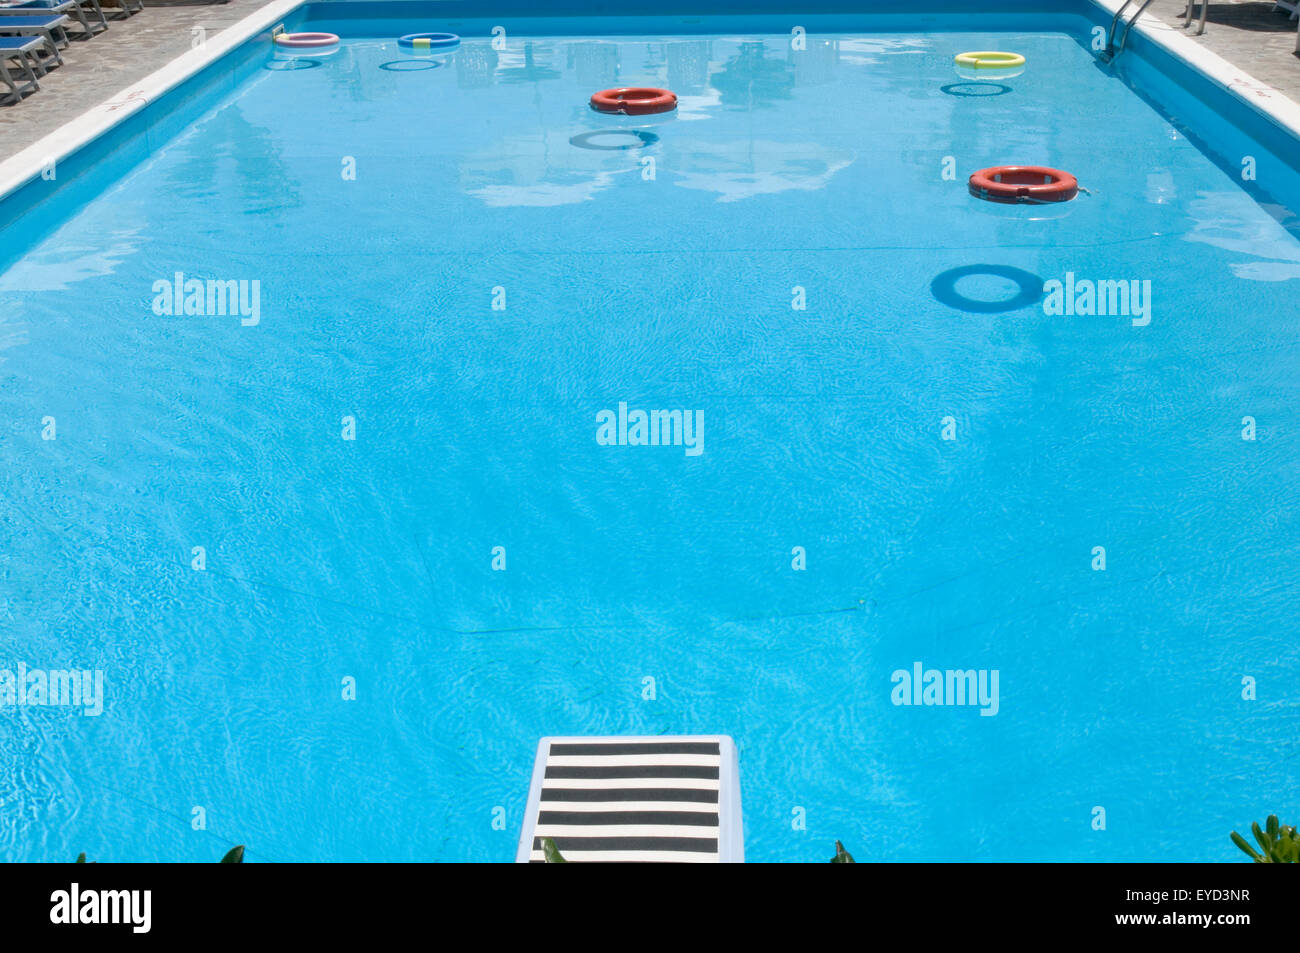 Piscine piscina pulizia detergente per pulizia piscina blu chiaro idropulitrici azienda azienda rinfrescante tuffo hotel strutture Foto Stock